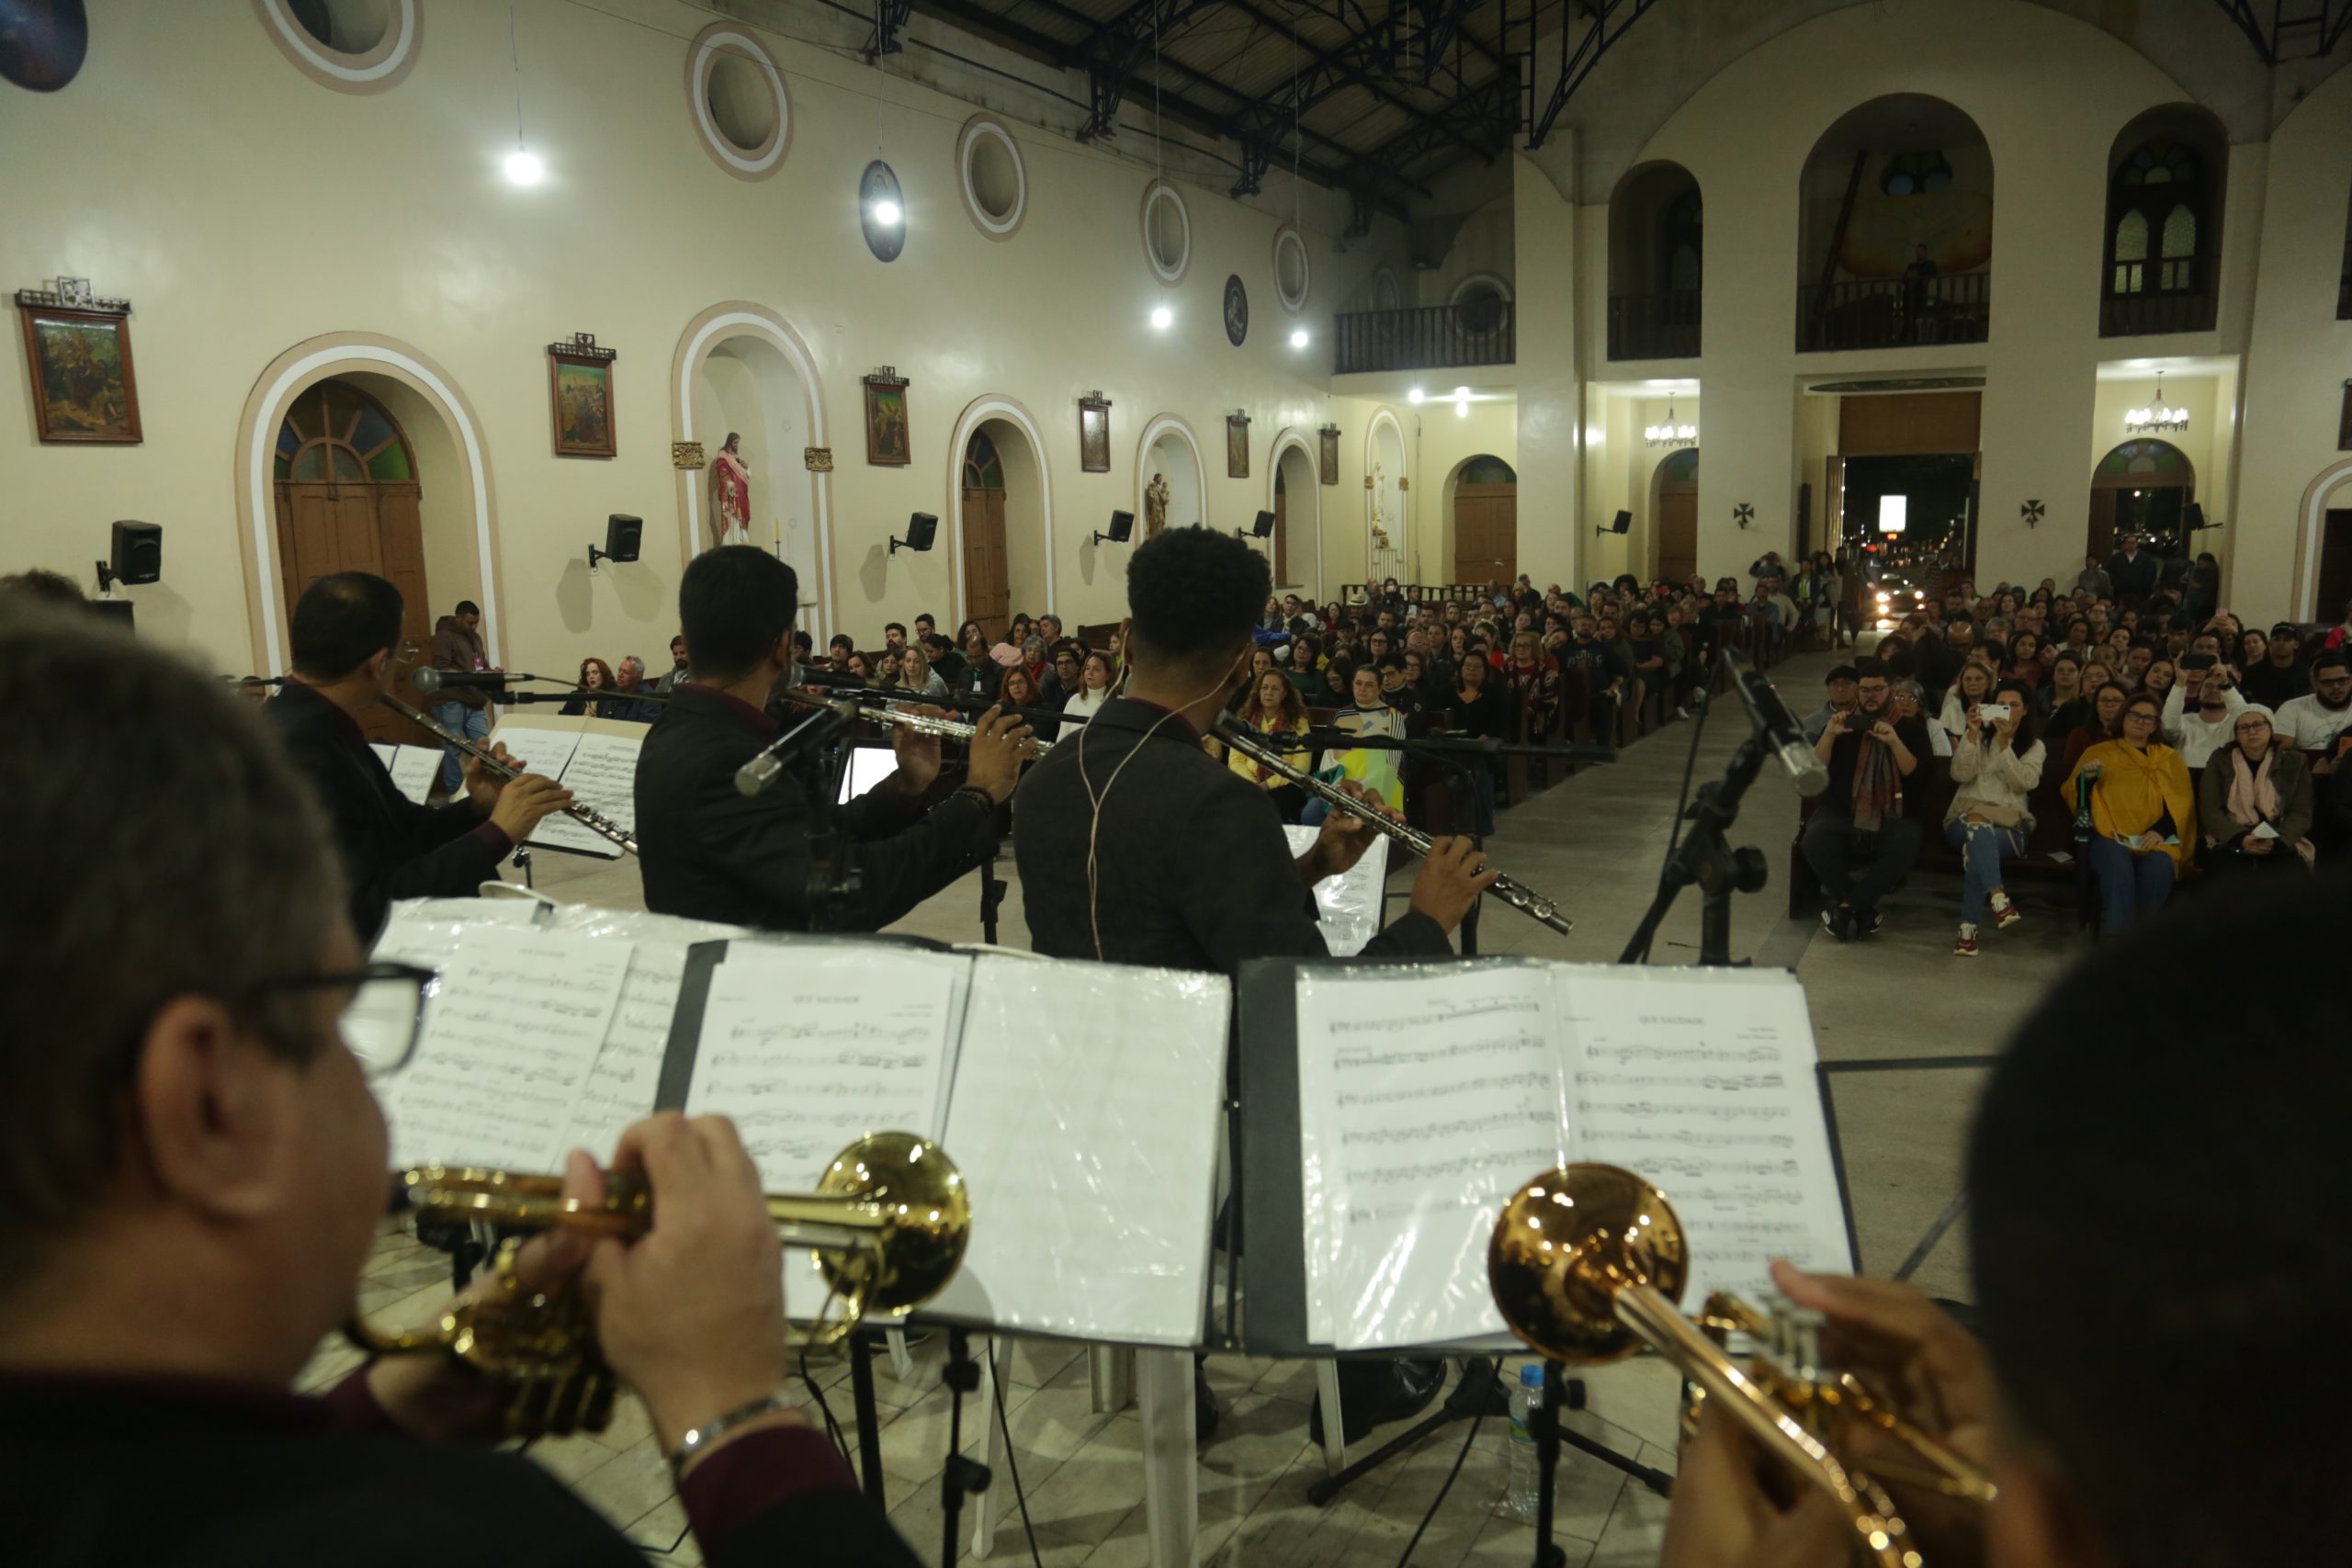 festival de inverno de garanhuns, fig, cpm, conservatório pernambucano de música